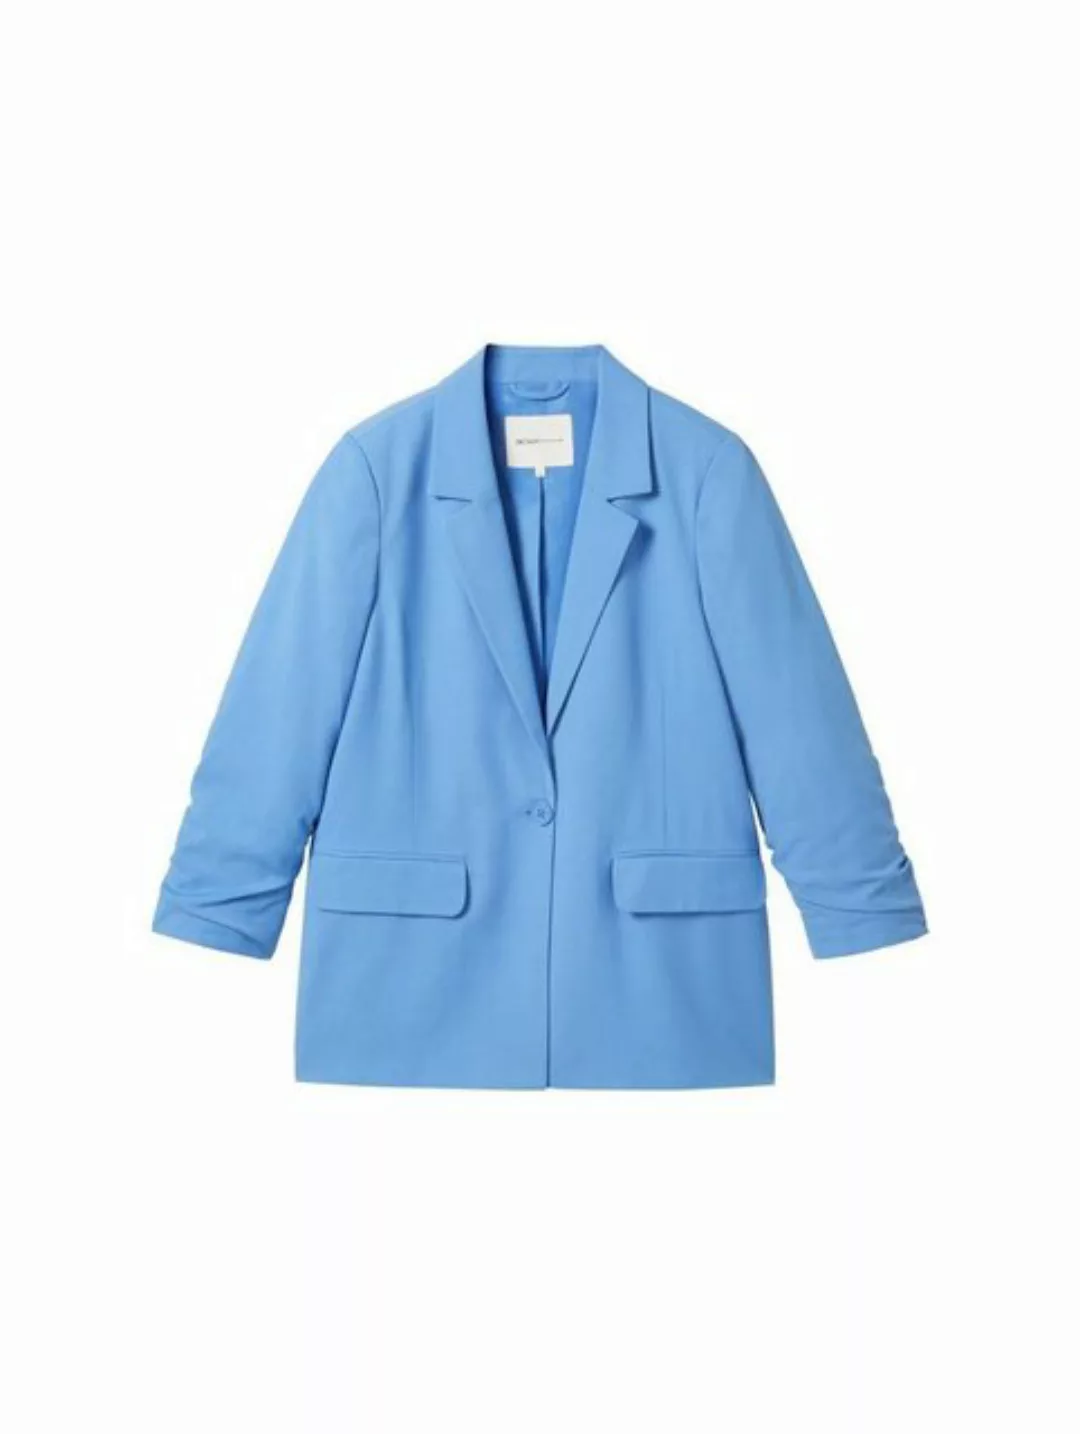 TOM TAILOR Denim Jackenblazer modern blazer, sicilian blue günstig online kaufen